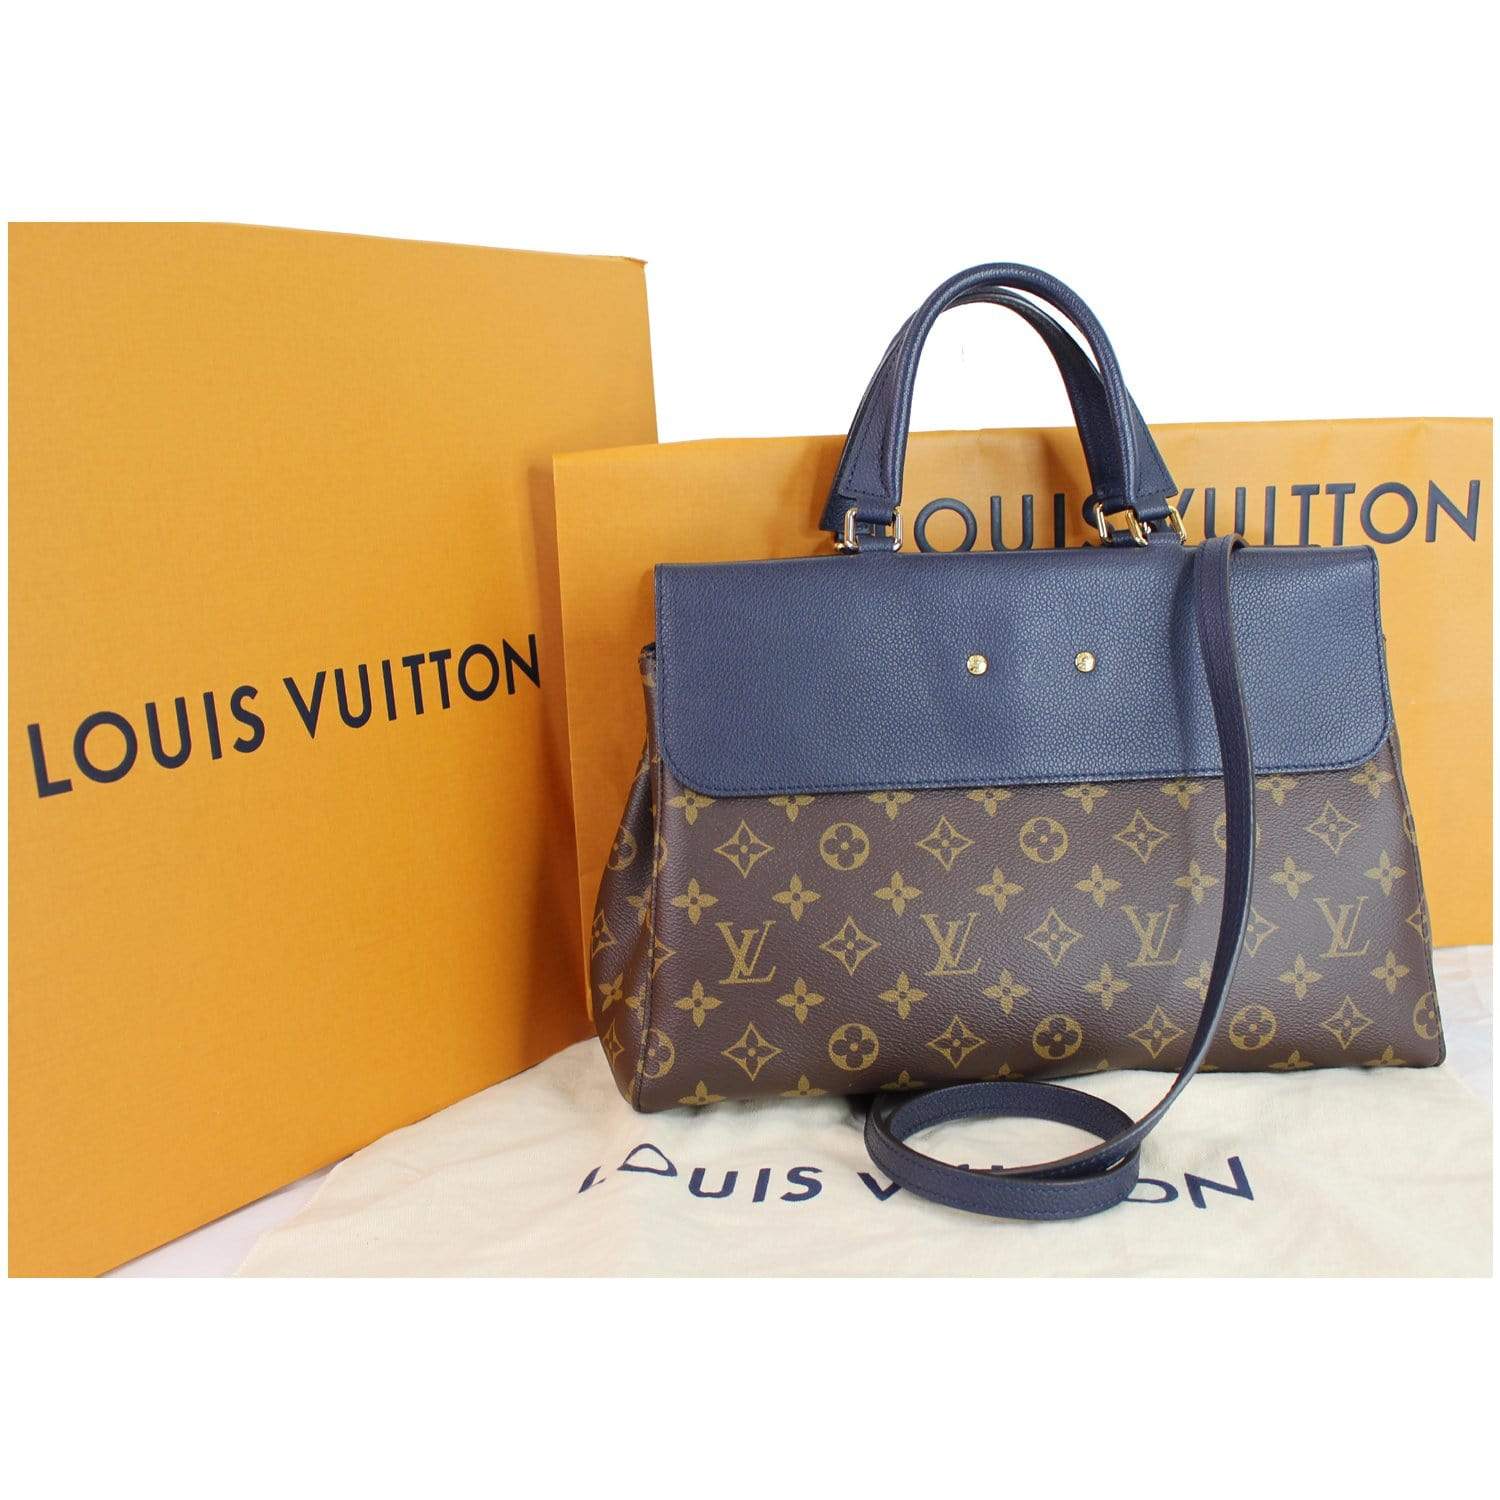 Louis Vuitton Venus Monogram Canvas 2way Handbag